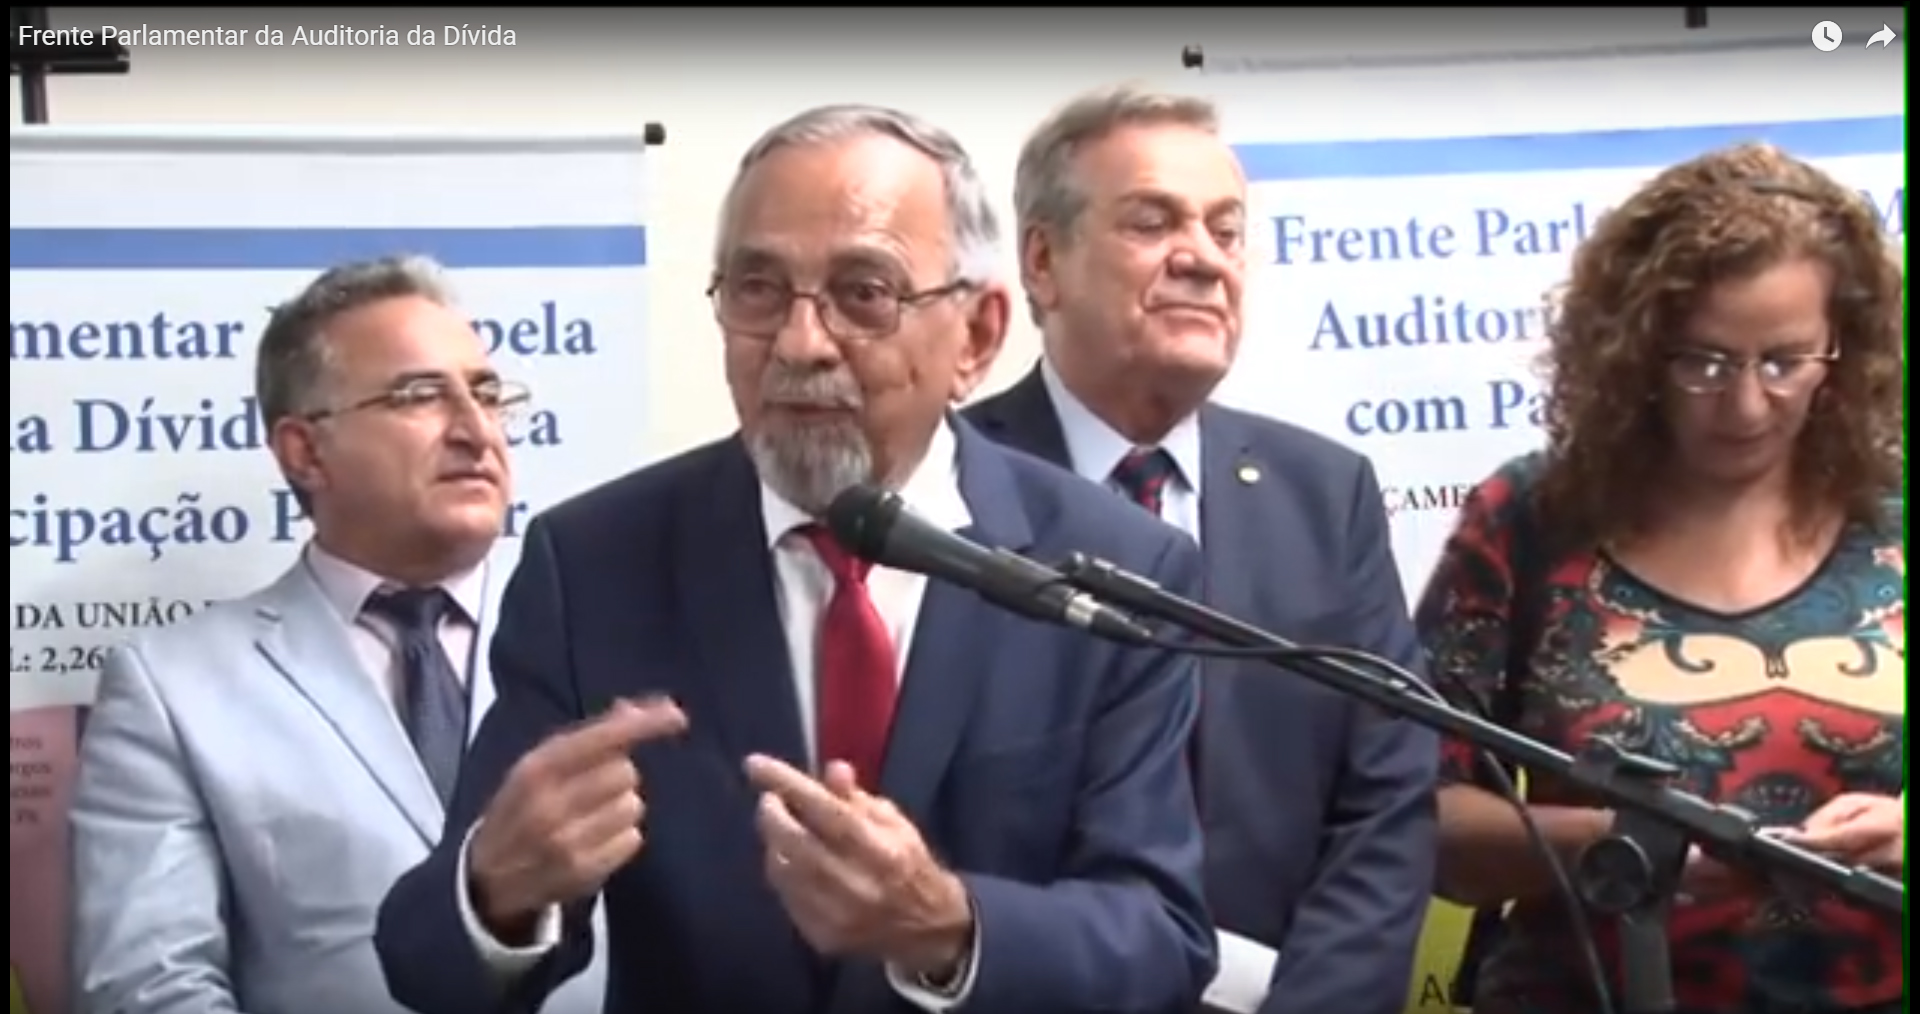 Vídeo Completo da Cerimônia de Lançamento da Frente Parlamentar Mista pela Auditoria da Dívida Pública com Participação Popular